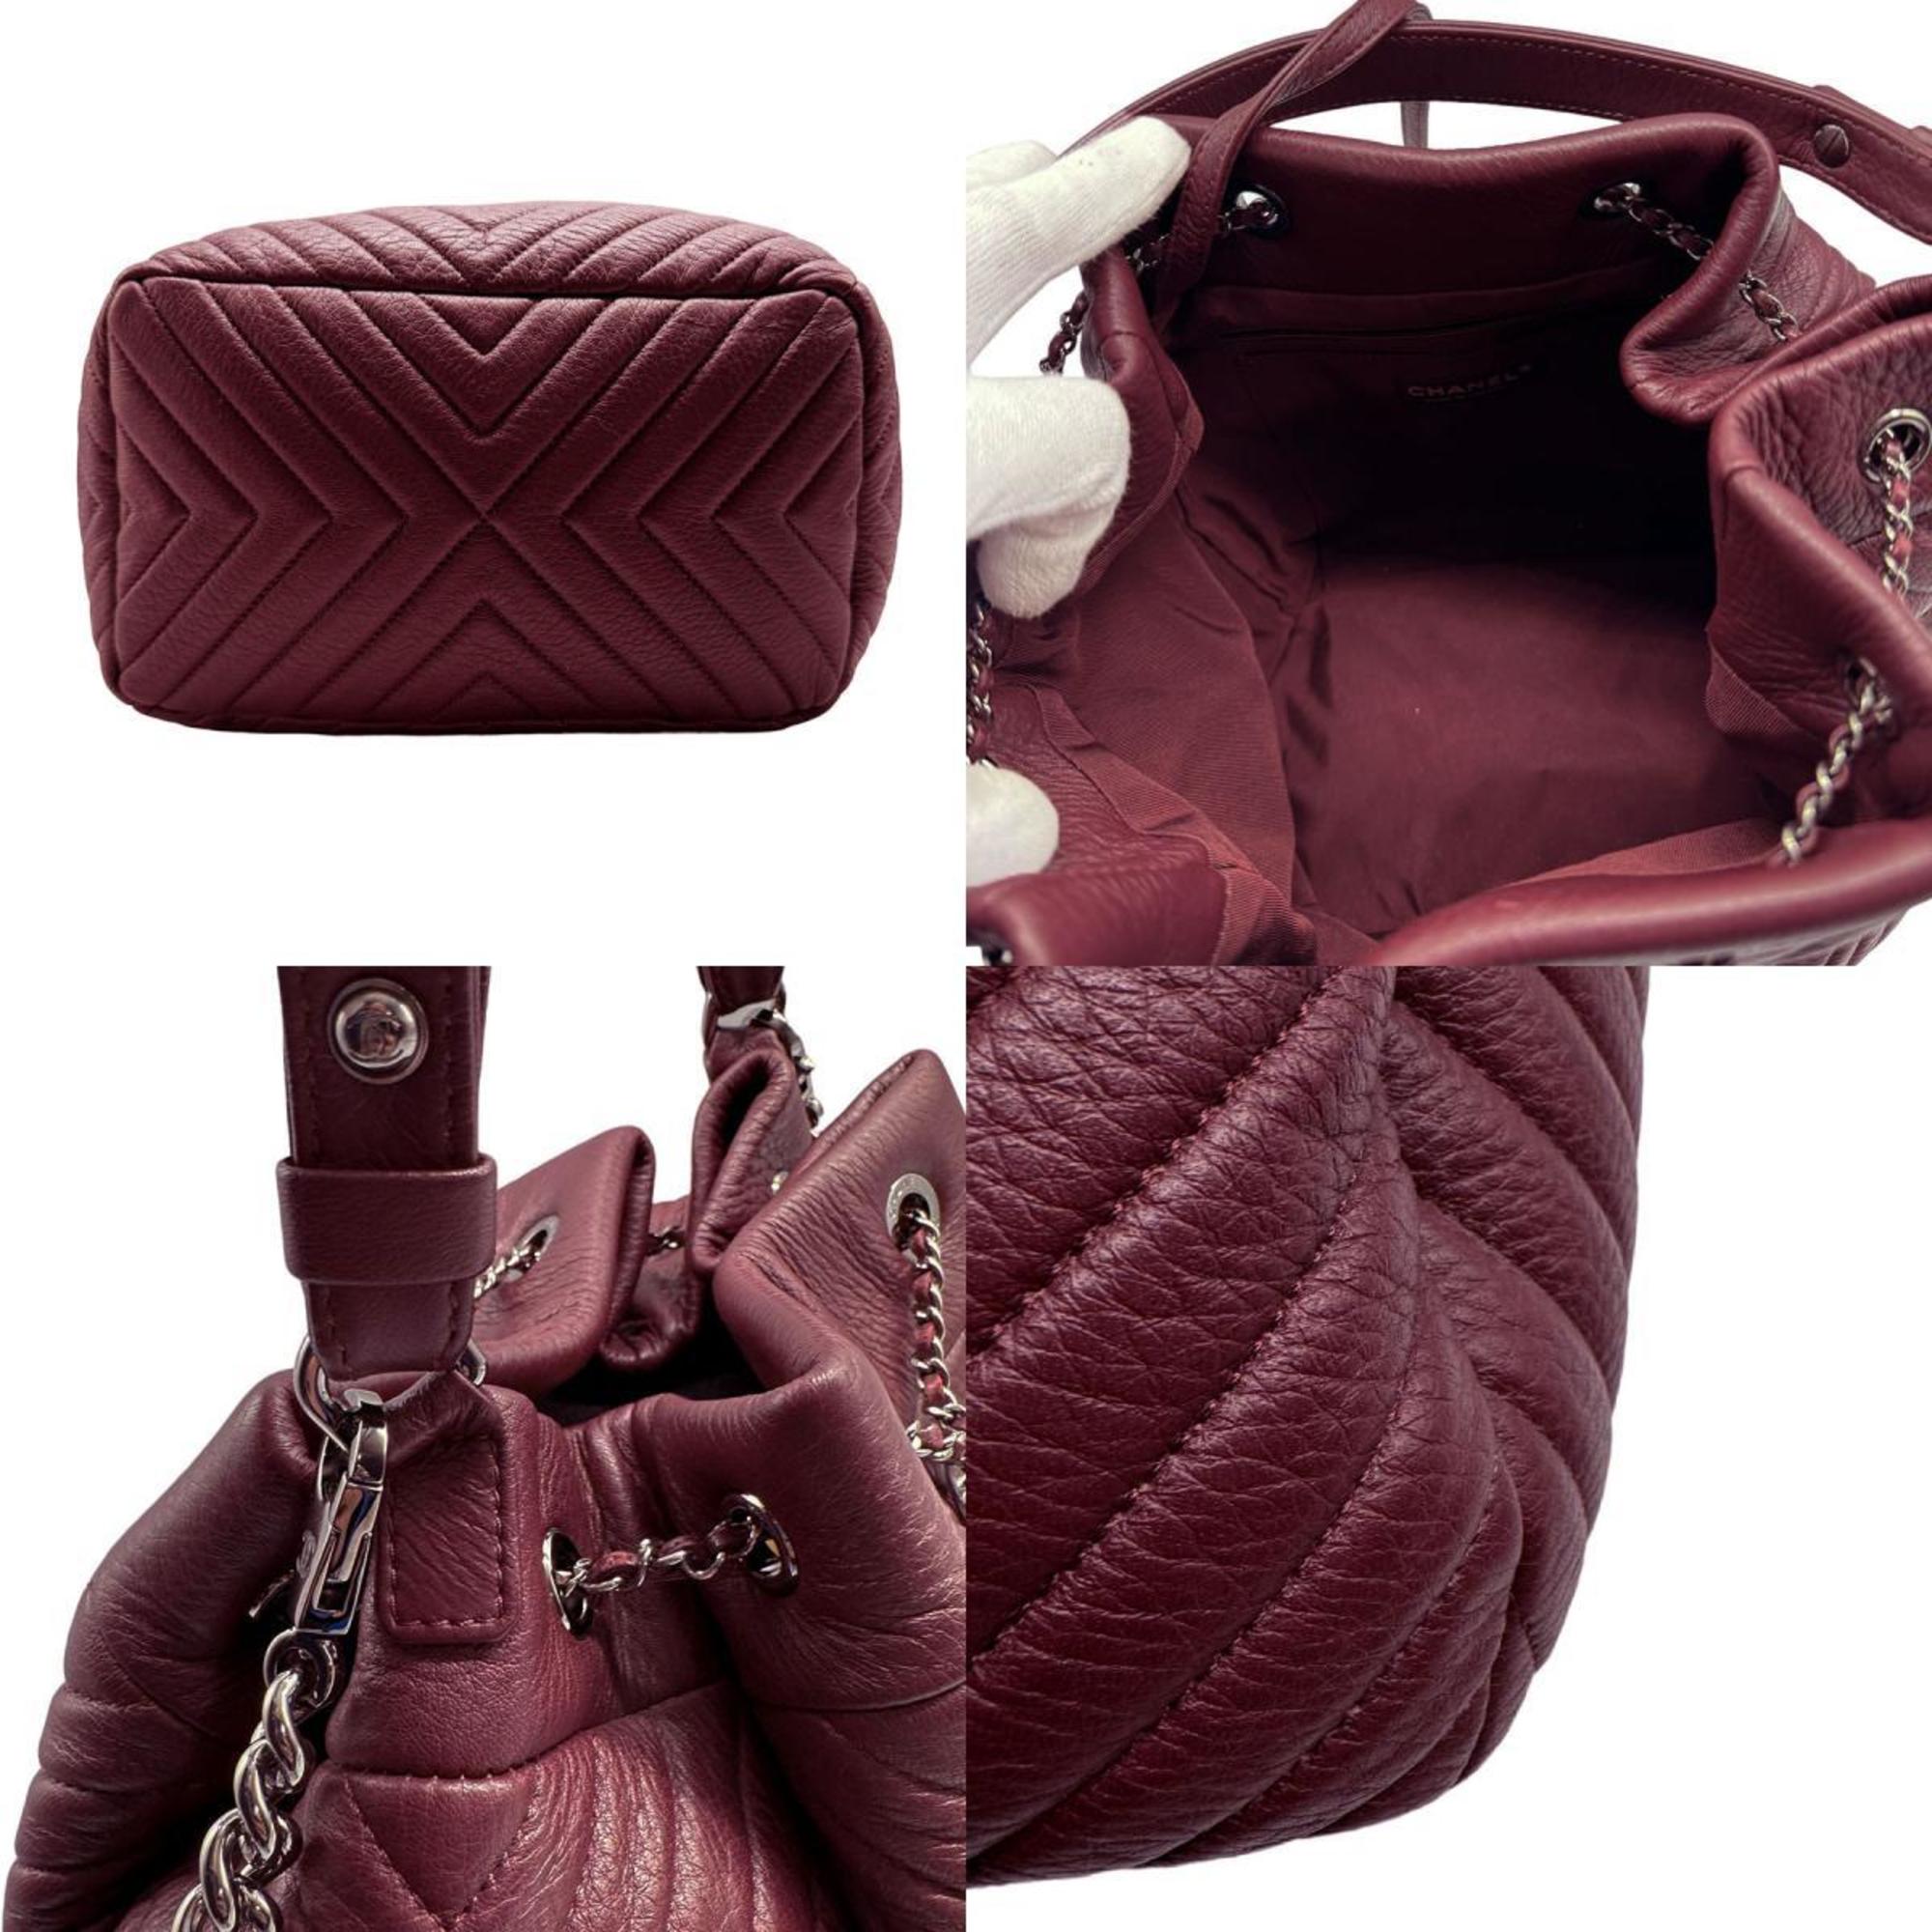 CHANEL Shoulder Bag Handbag V Stitch Leather Bordeaux Women's z0456